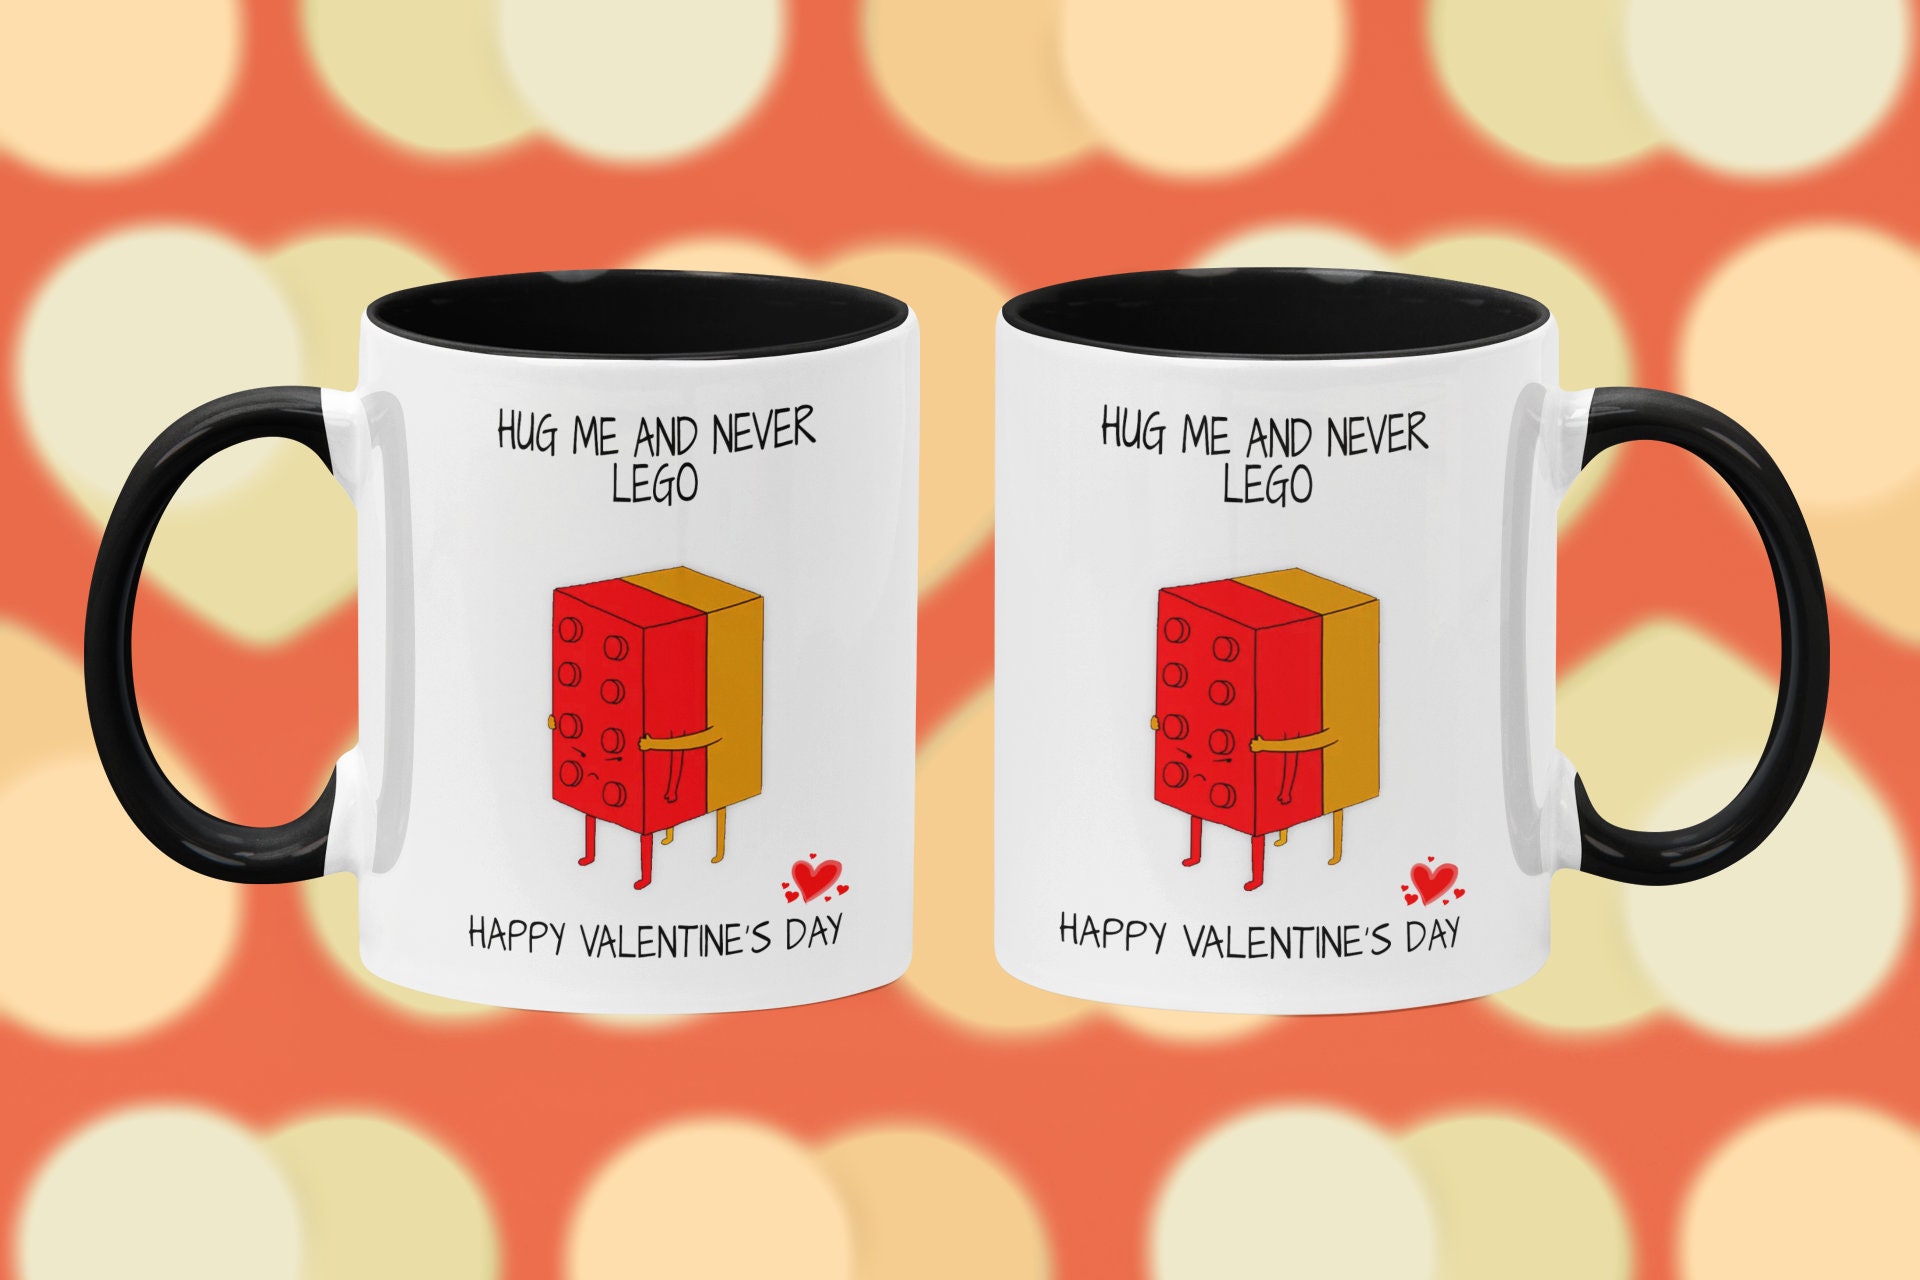 Ill Never LEGO of You Mug, Lego Themed Mug, Novelty Lego Mug, Lego Fan,  Punny Mug, Valentines Day Mug, Morning Coffee Mug. -  Denmark